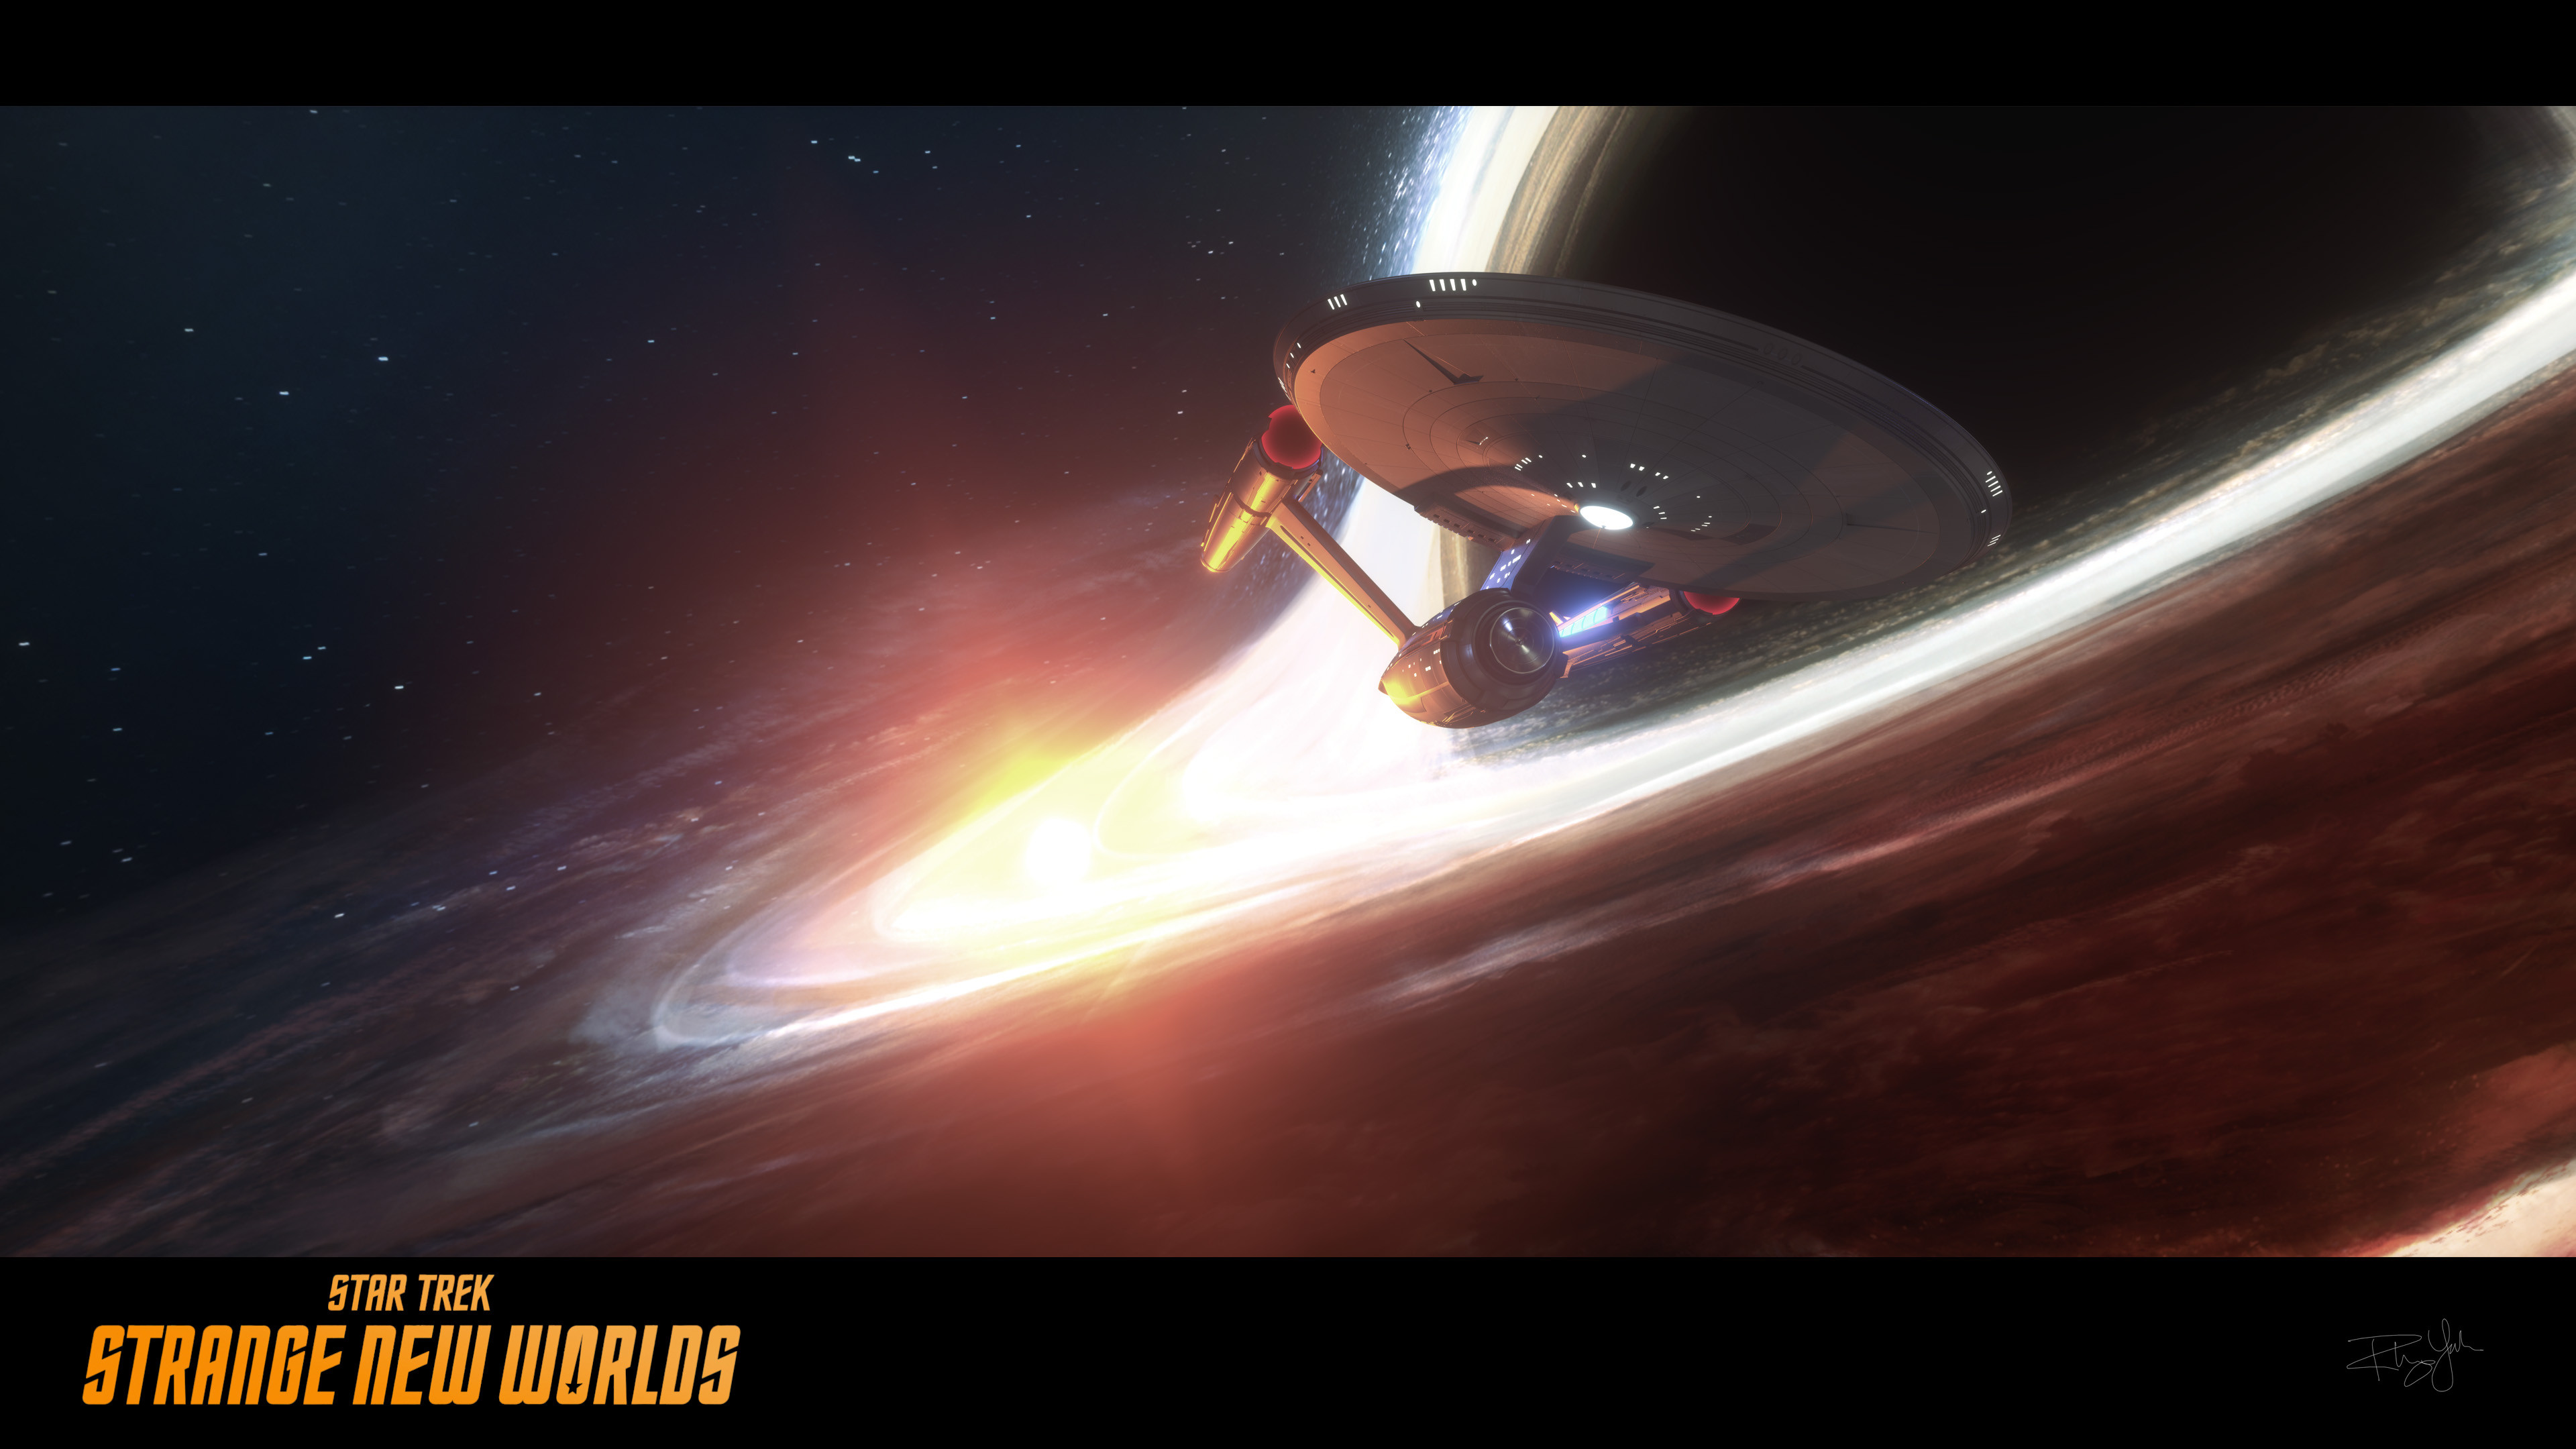 The Enterprise slingshot.